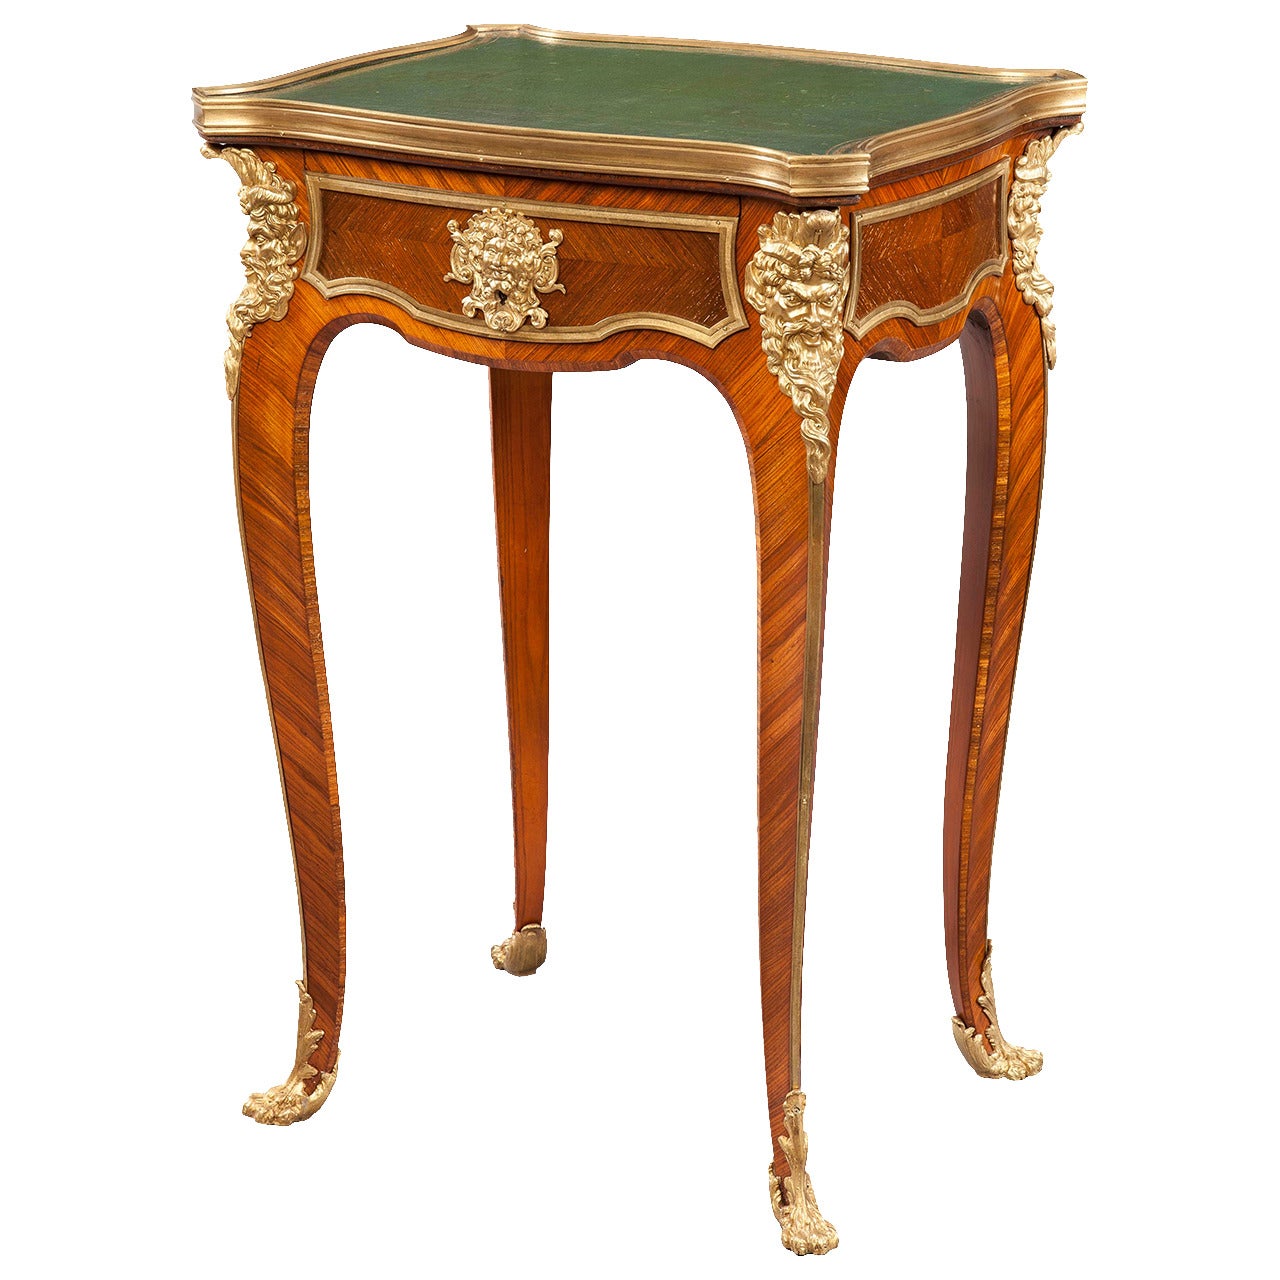 Table d'appoint XIXe siècle français de style Louis XV